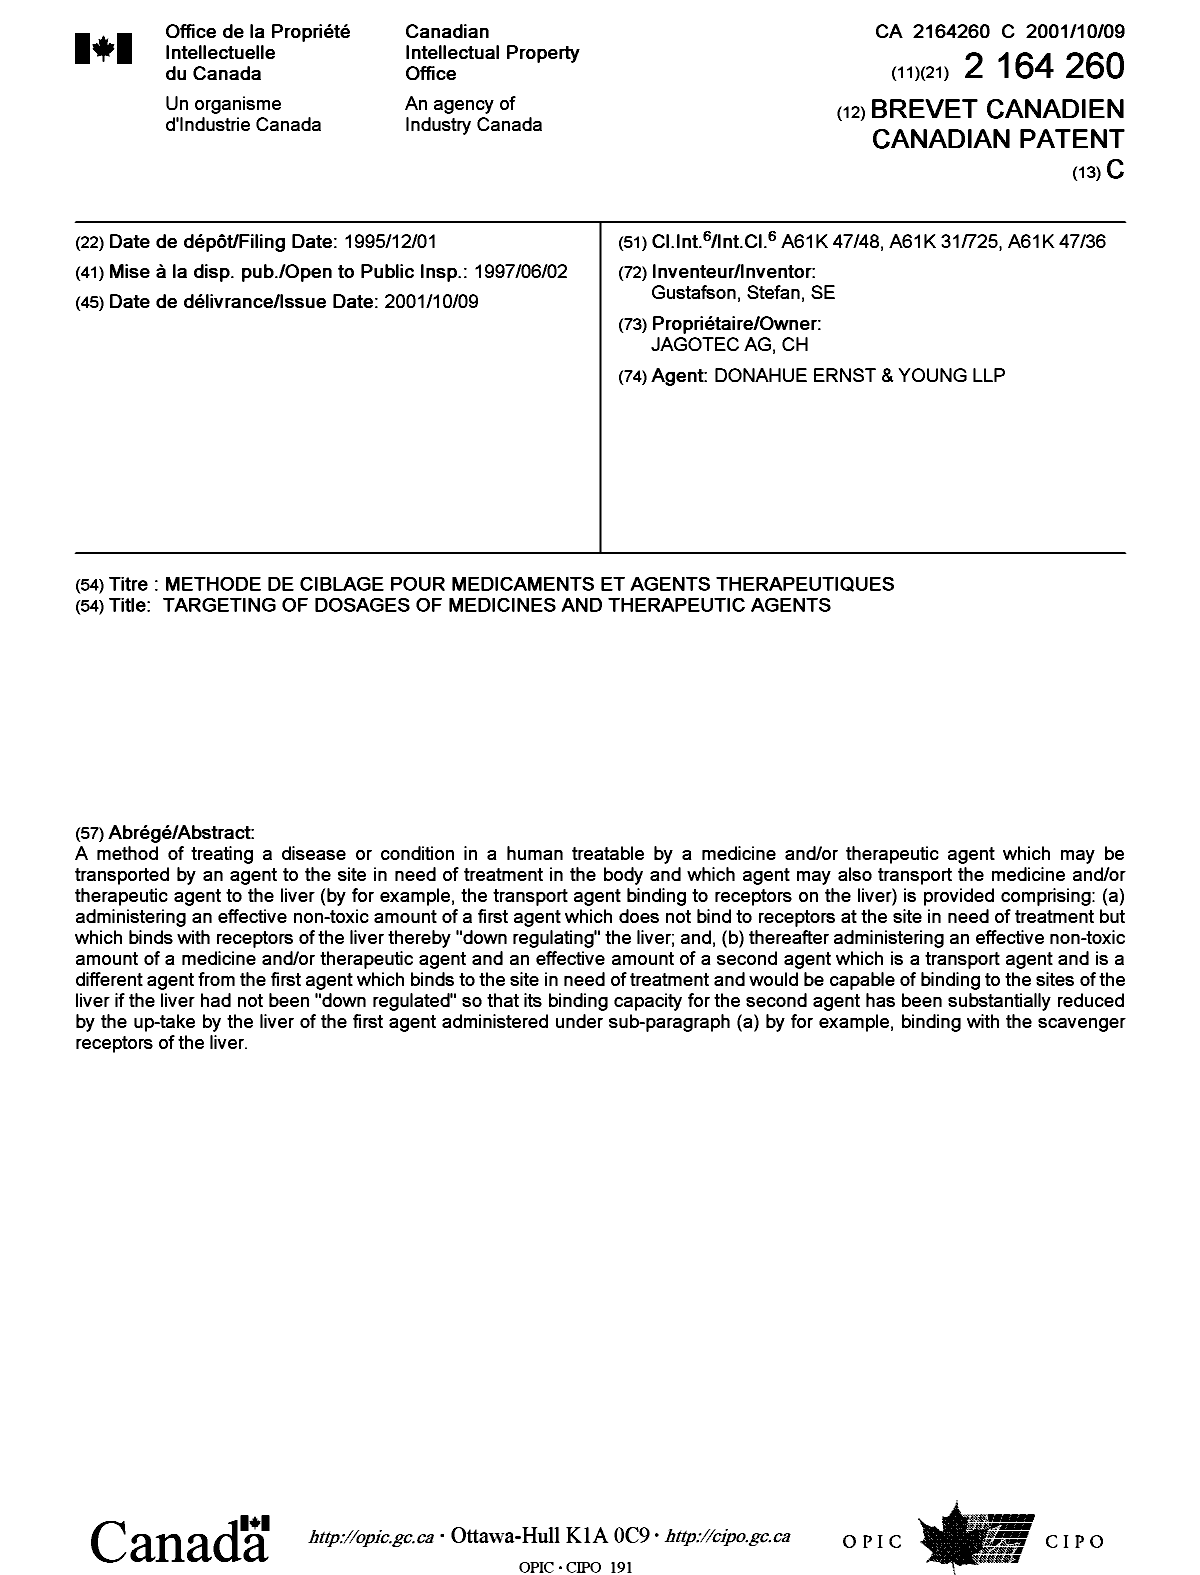 Document de brevet canadien 2164260. Page couverture 20010925. Image 1 de 1